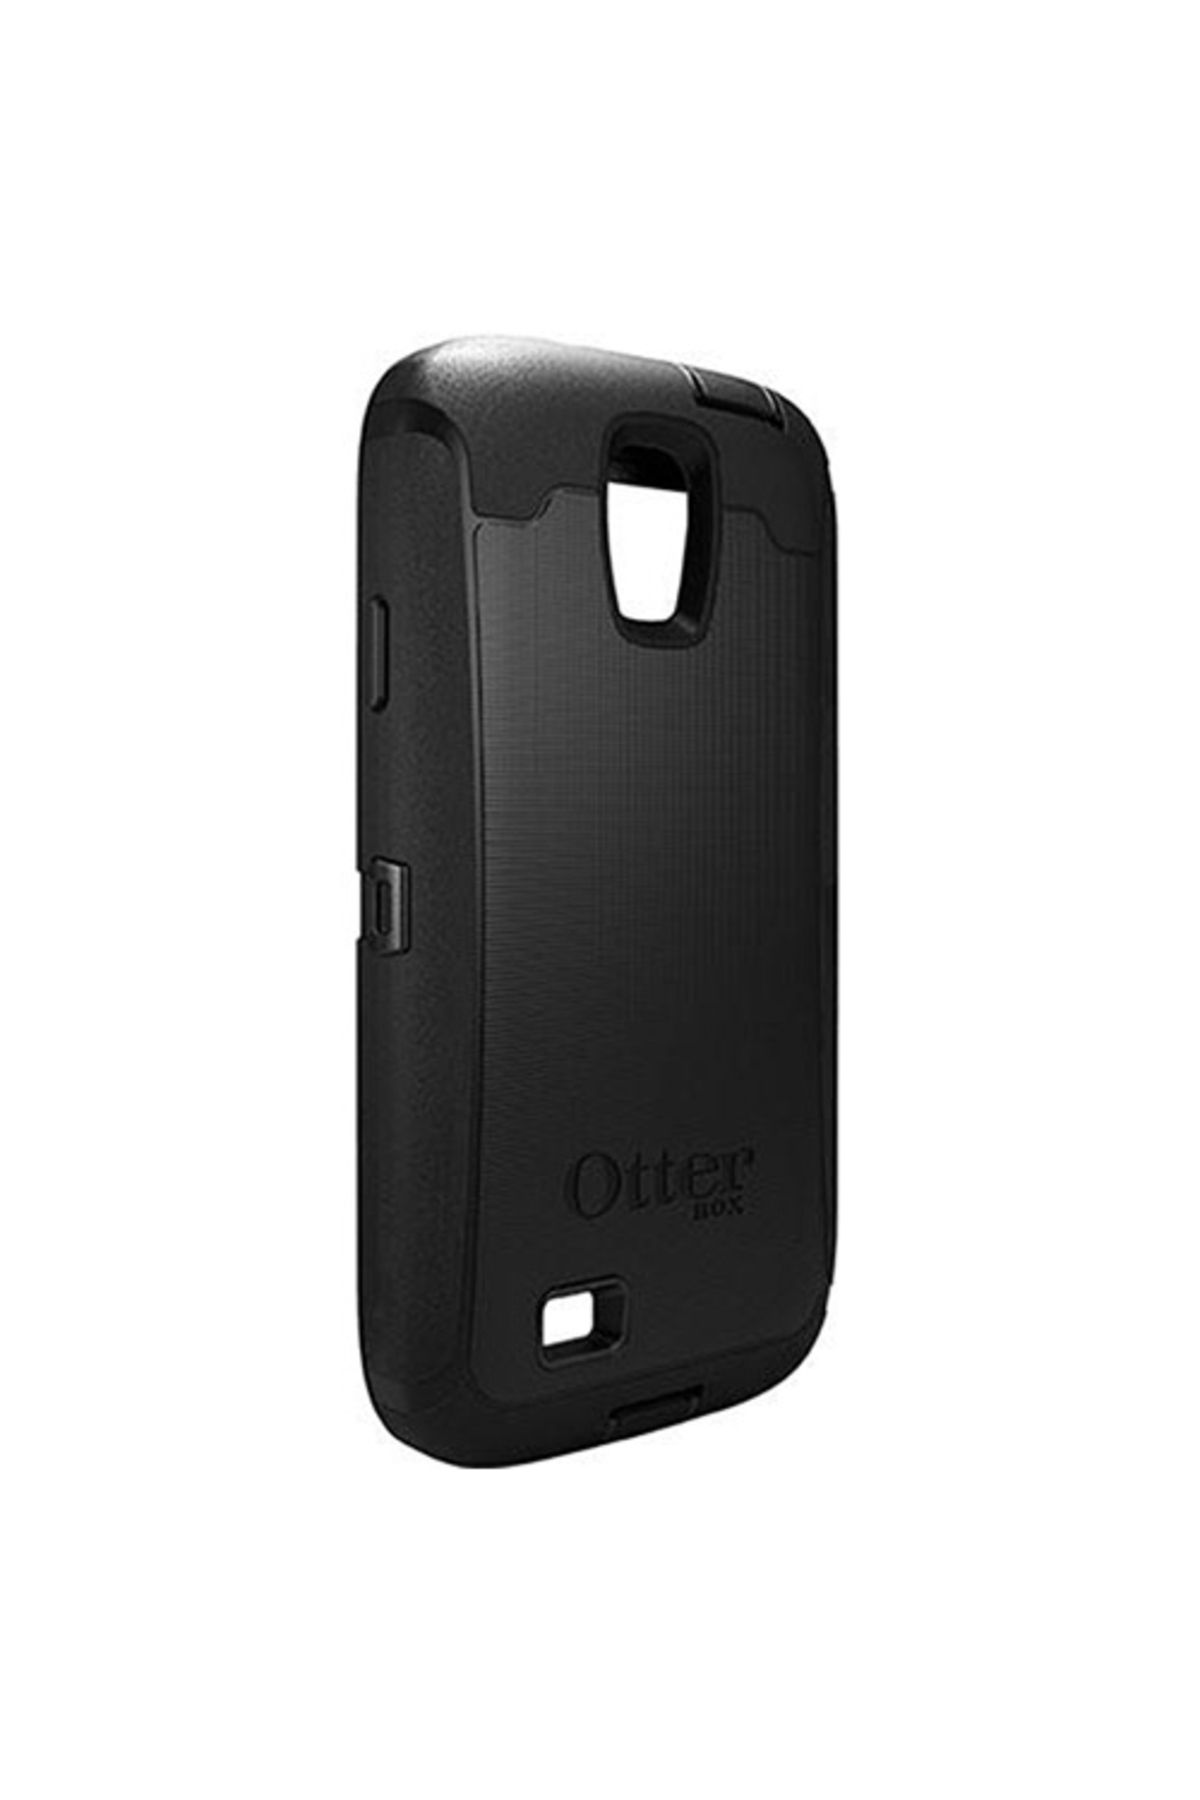 OtterBox Galaxy S4 Defender Kılıf Siyah